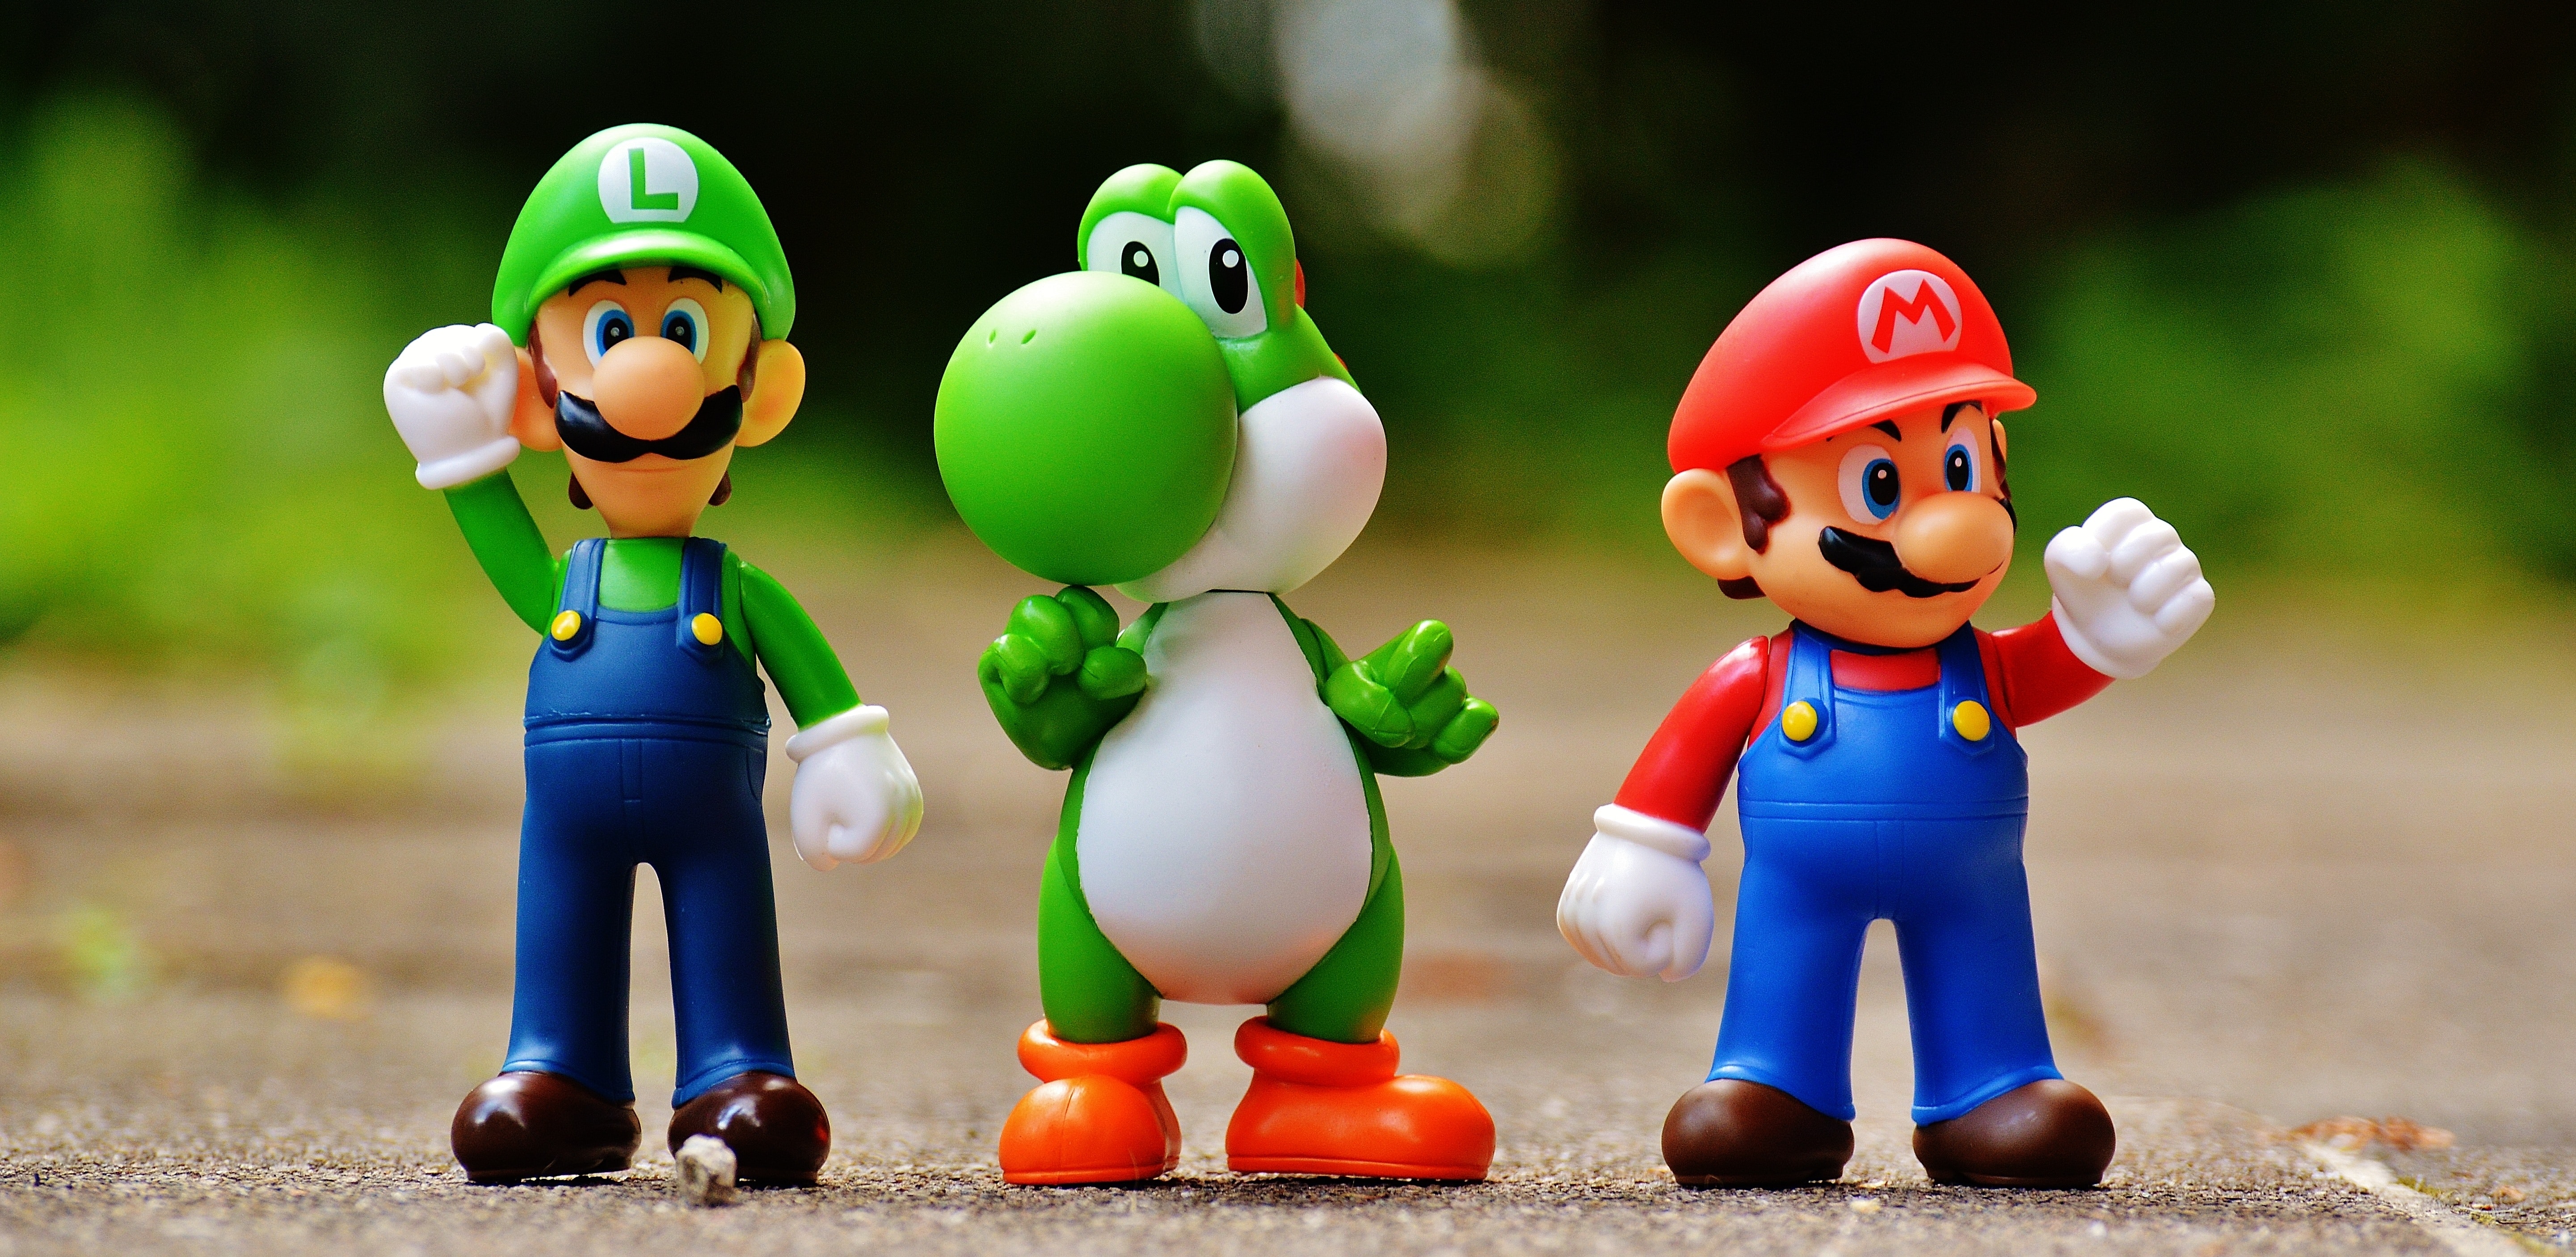 Figures of Luigi, Yoshi, and Mario